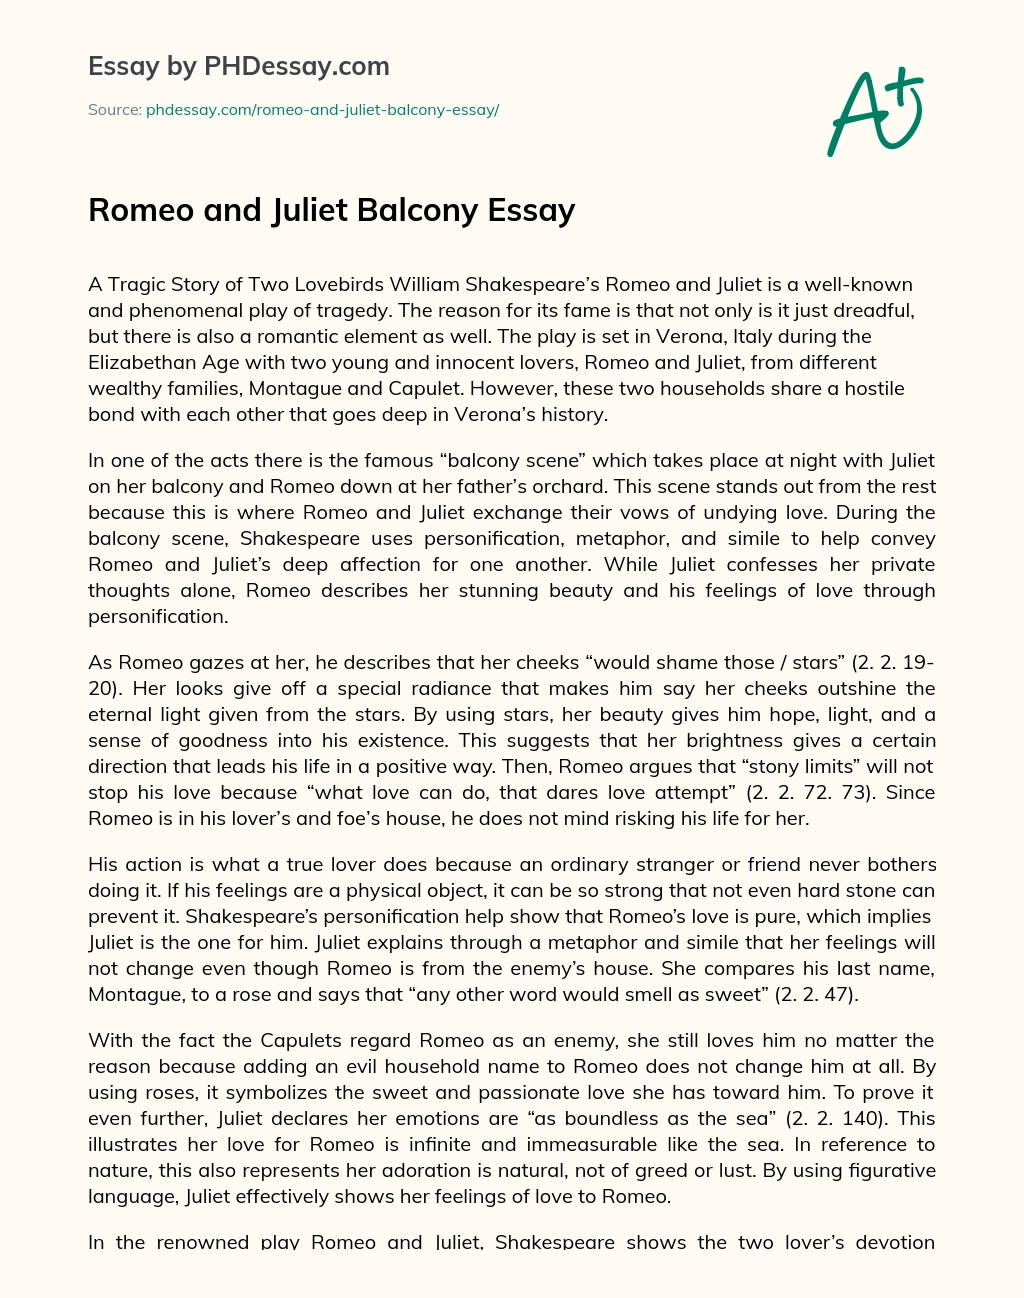 Romeo and Juliet Balcony Essay essay